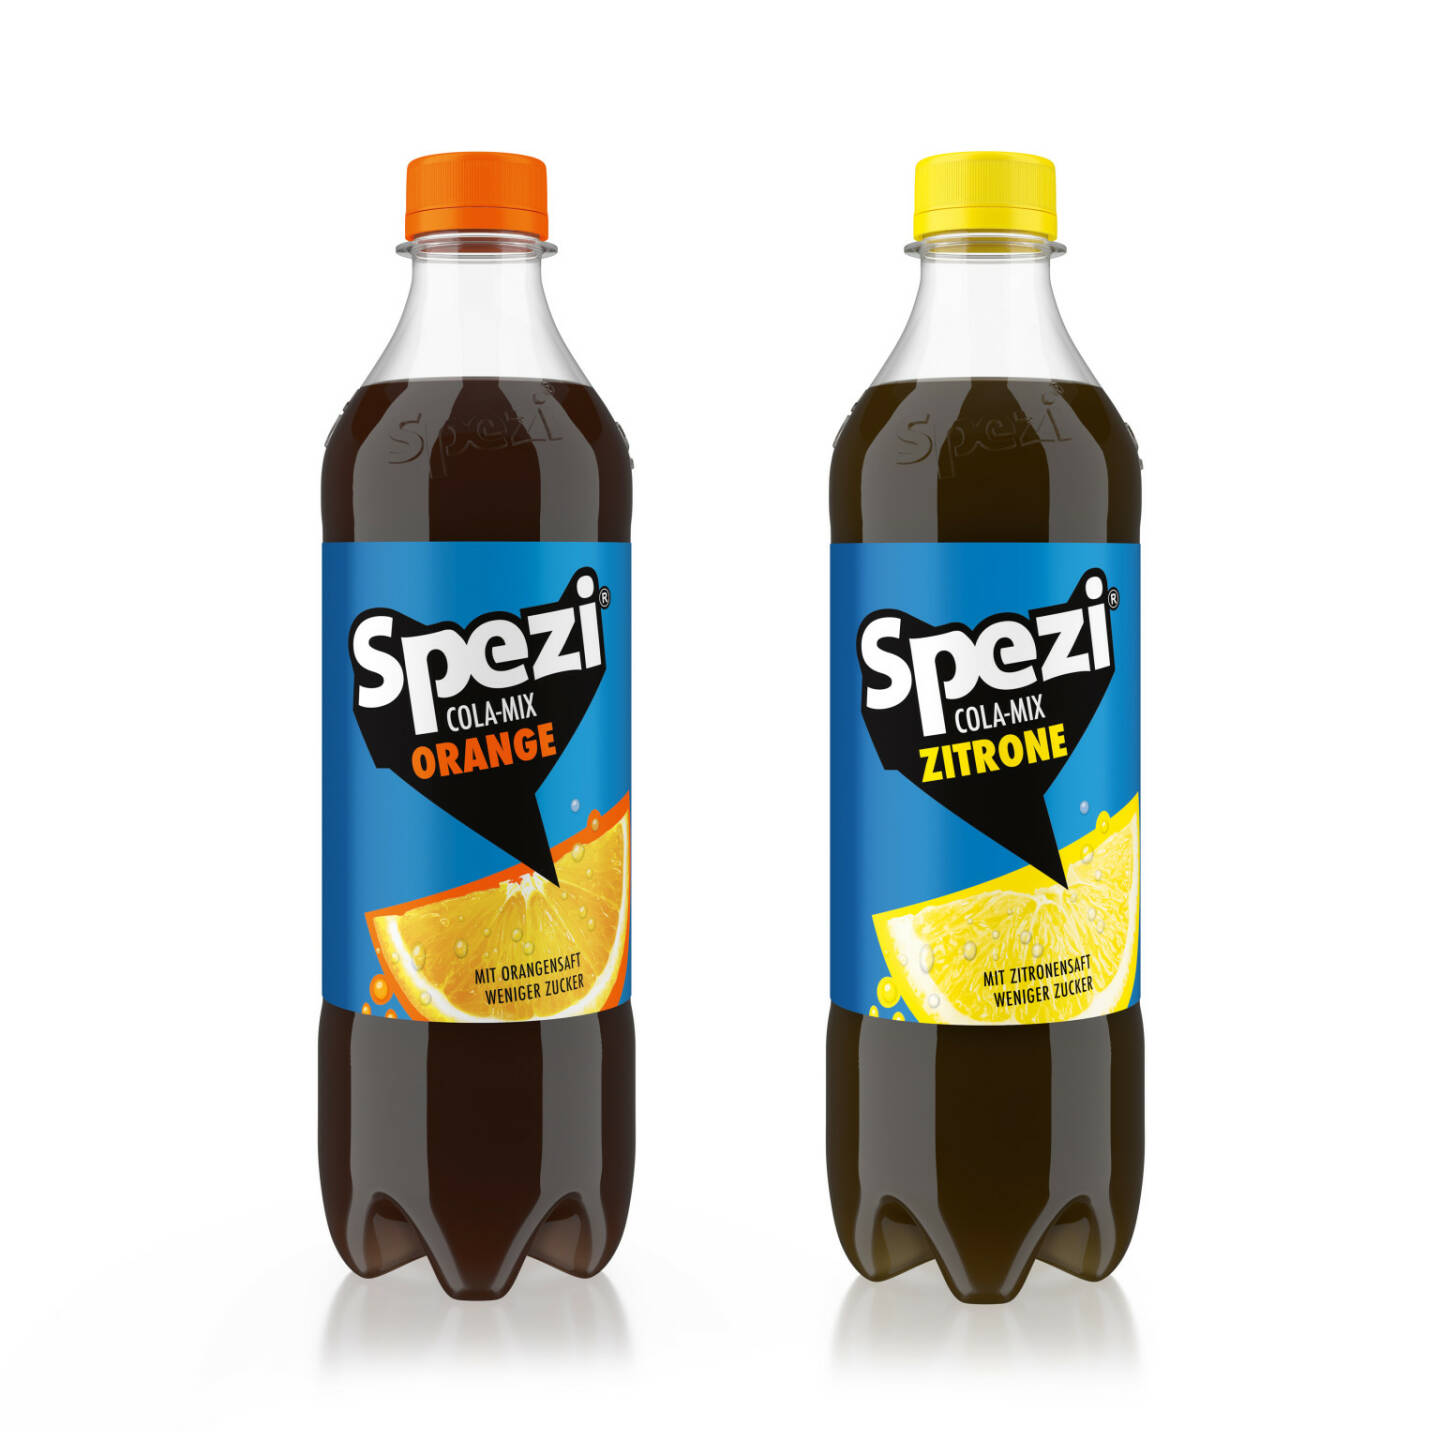 Almdudler Limonade A.& S. Klein GmbH & Co KG: Almdudler Innovationen und Spezi Cola-Mix:
Zwei Originale mischen den Markt auf; NEU: Spezi Cola-Mix Orange & Spezi Cola-Mix Zitrone; Fotocredit:(c) Almdudler